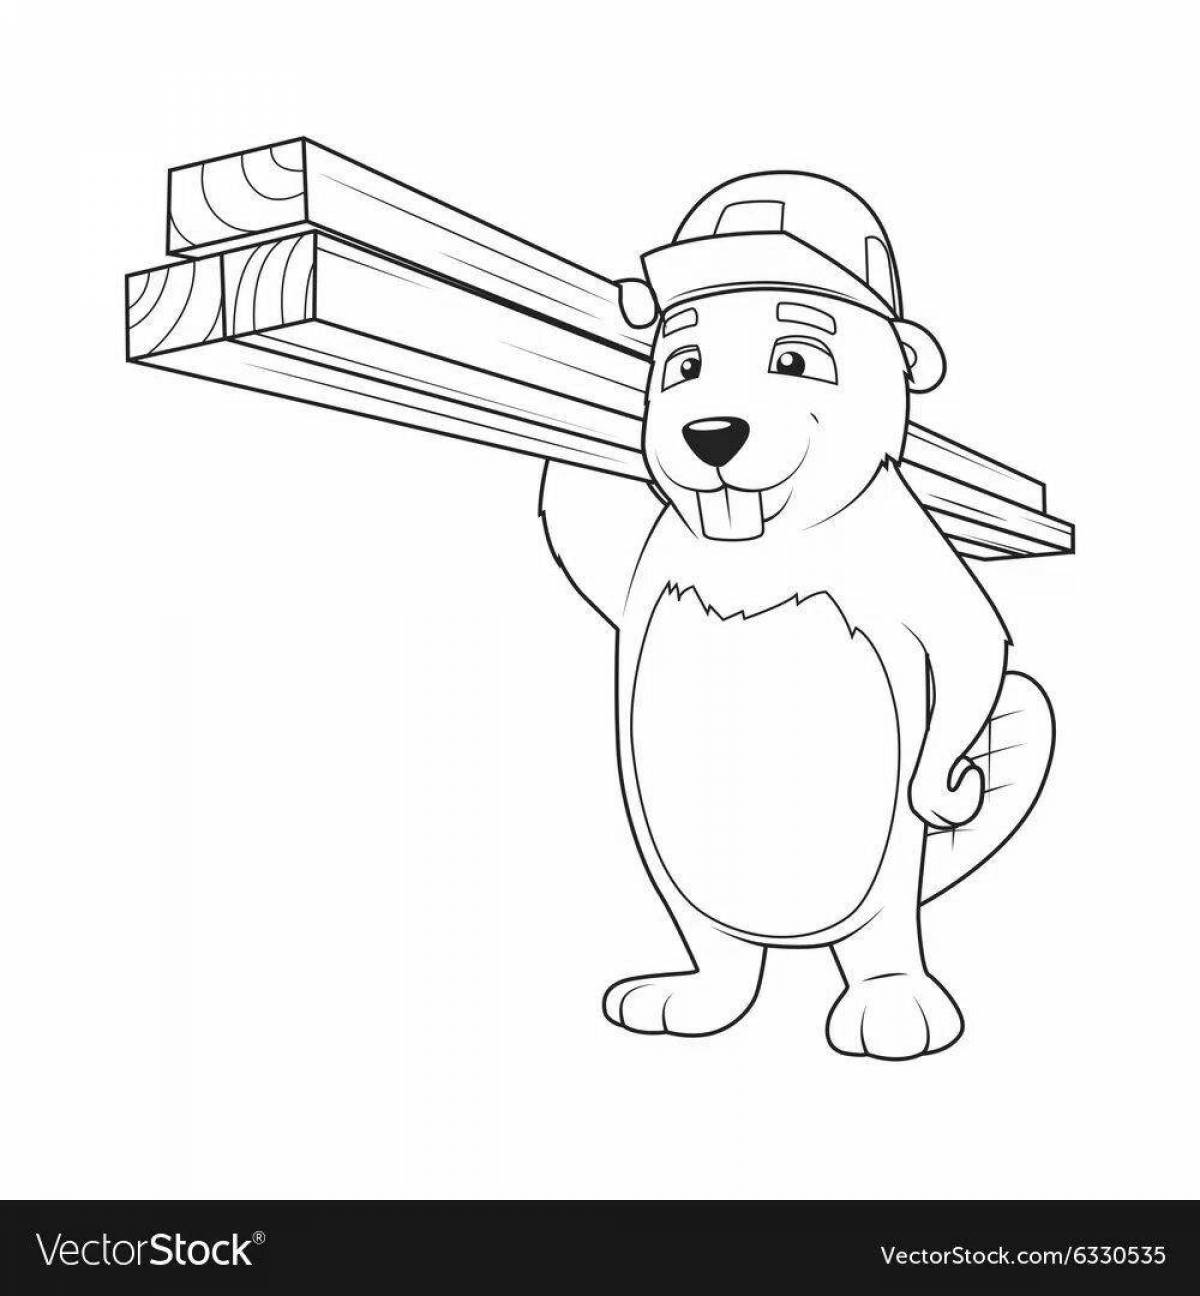 Beaver fun coloring